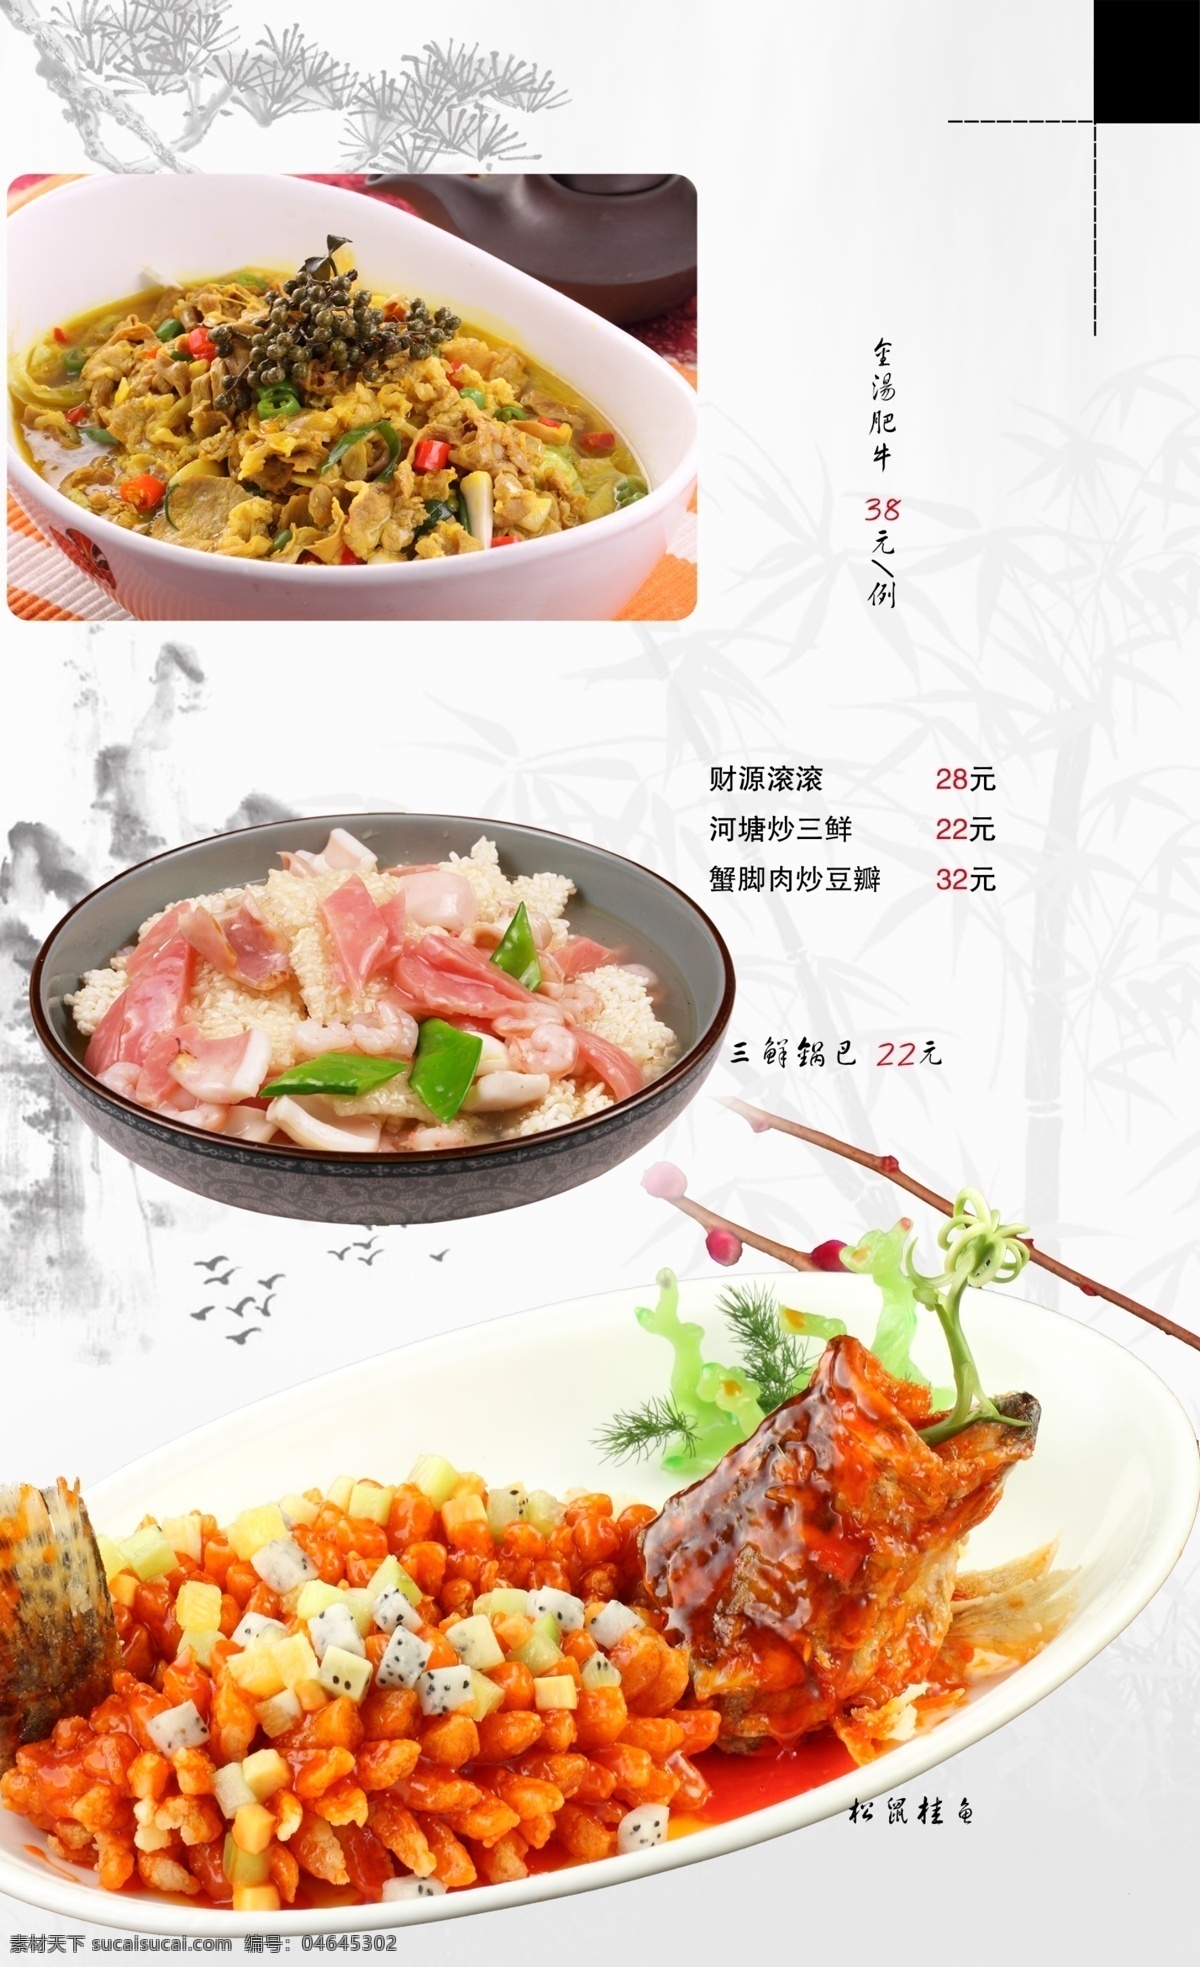 高级炒菜菜谱 高级菜谱 菜谱 菜单 高级菜单 jinguangsheji 分层